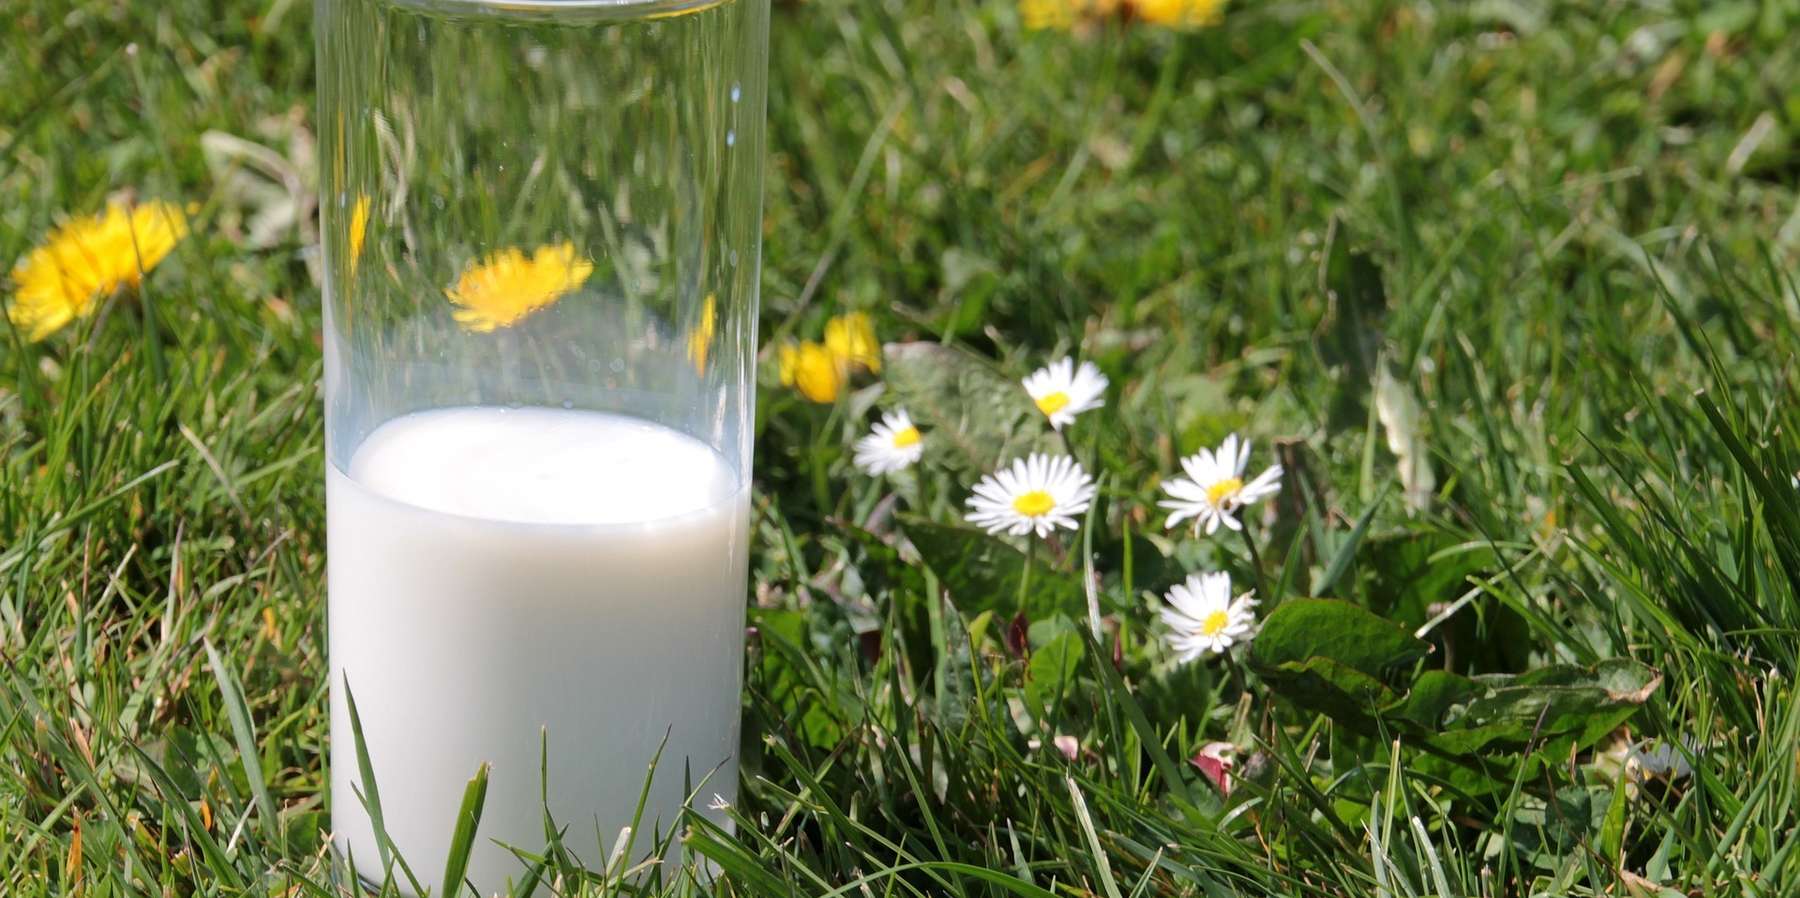 Hemmstoffe in der Milch vermeiden © pixabay